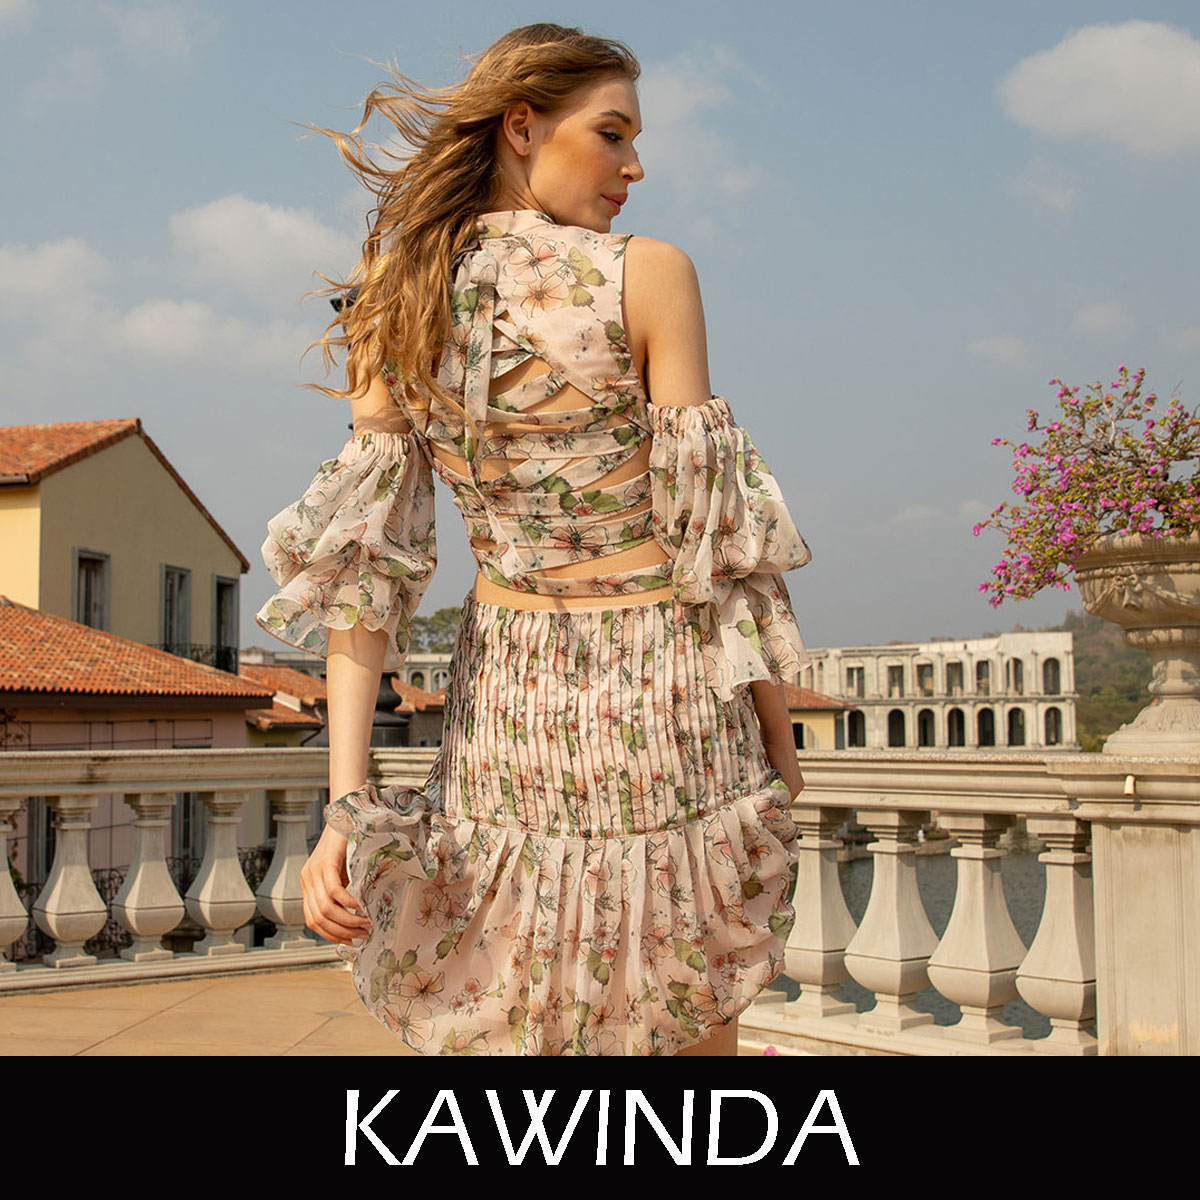 ช้อป KAWINDA ออนไลน์ หลากหลายสินค้ายอดนิยม | lazada.co.th